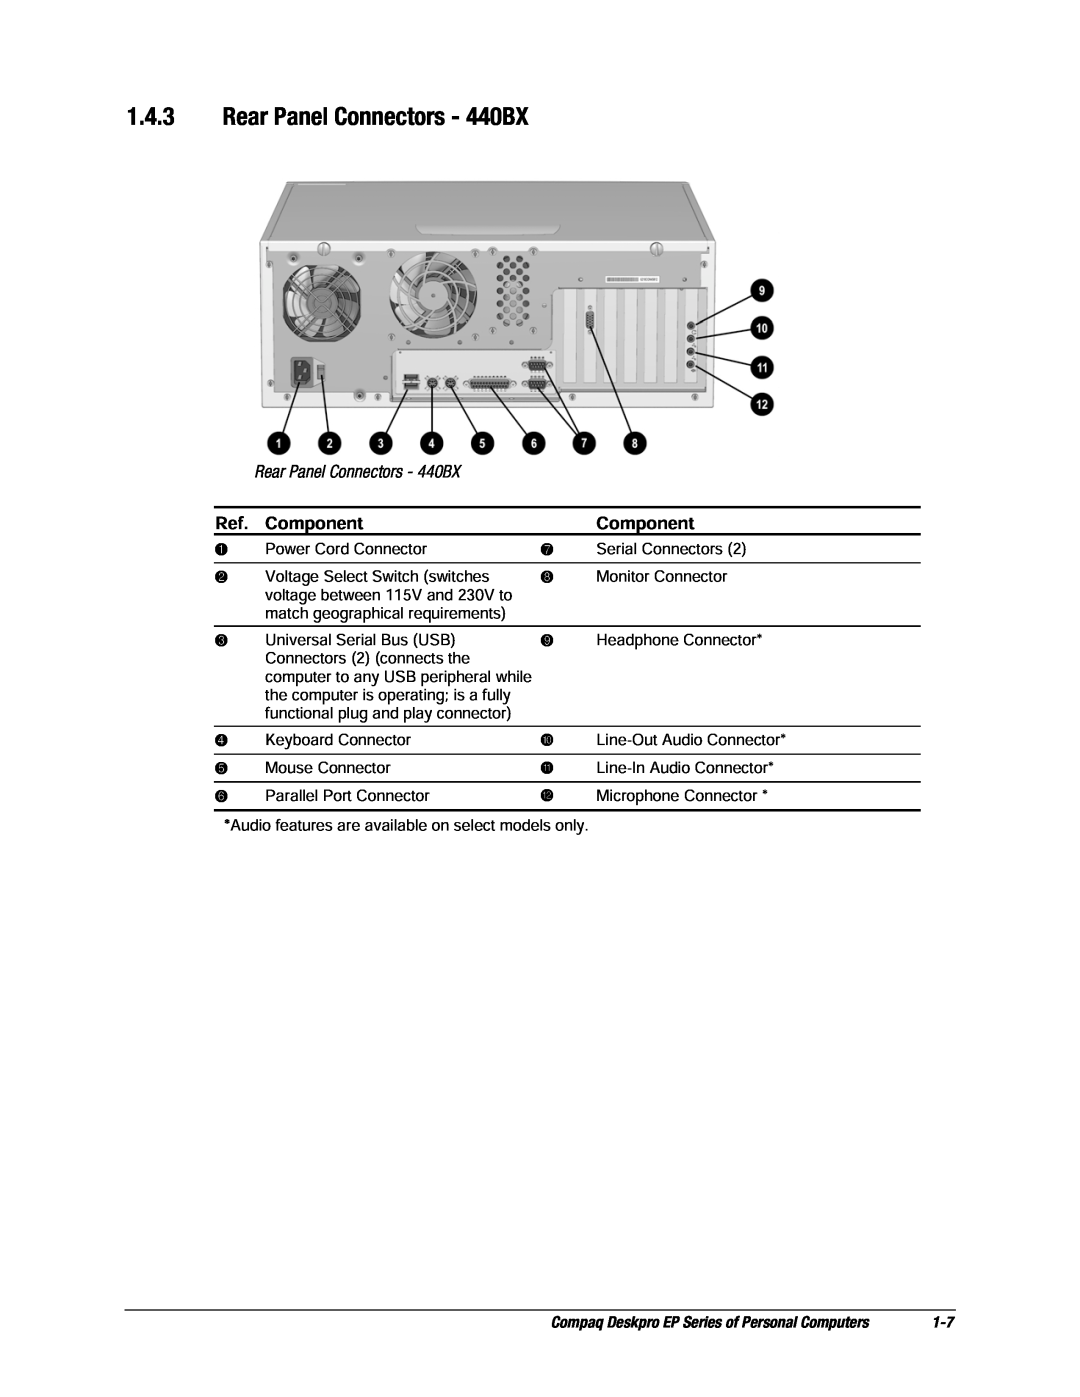 Compaq EP Series manual Rear Panel Connectors - 440BX, Component 